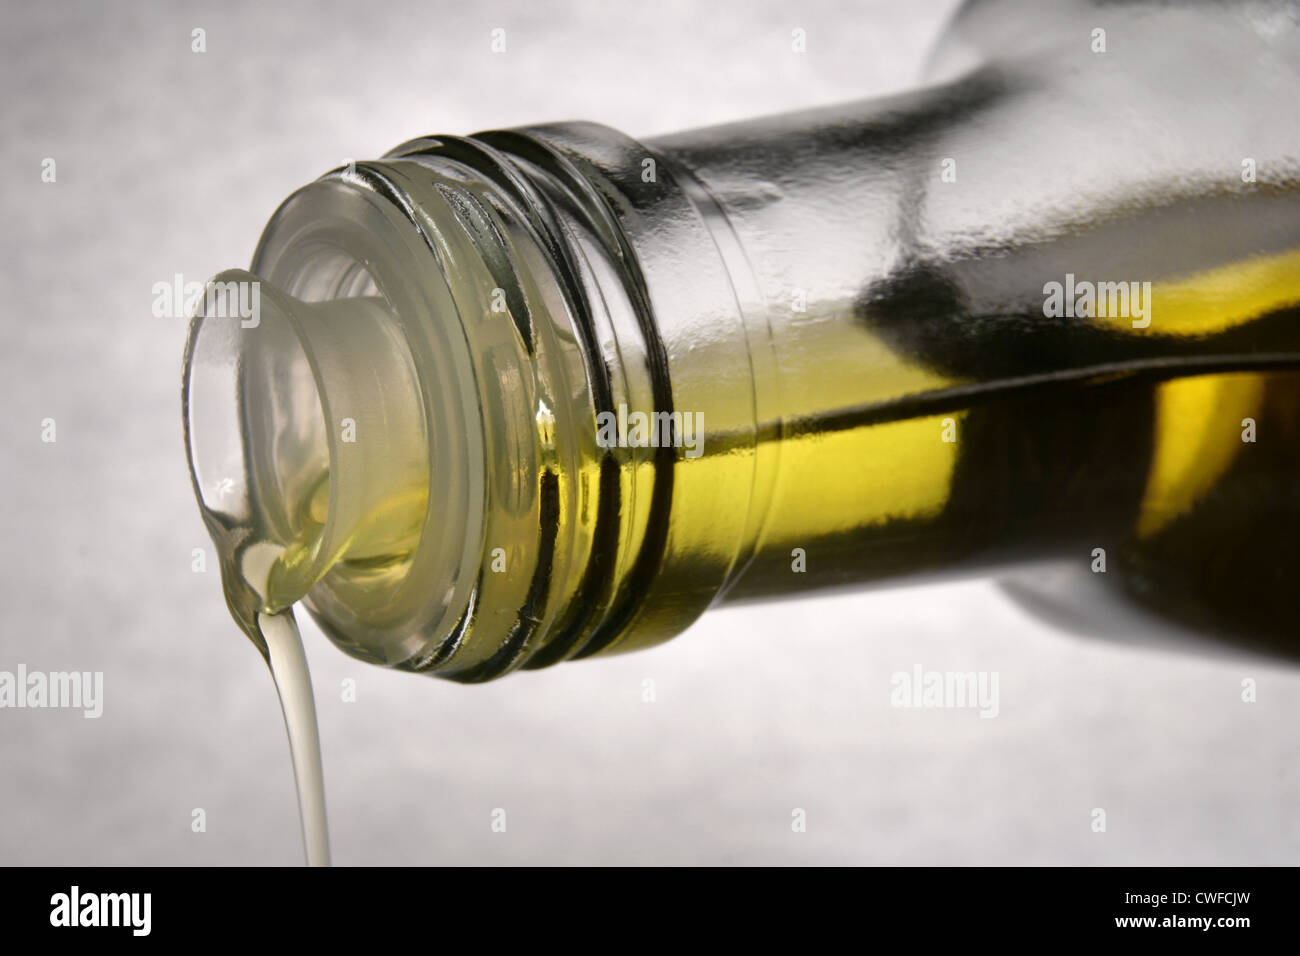 Bild: Steve Race - spanisches Olivenöl extra vergine aus Empeltre Oliven hergestellt. Stockfoto